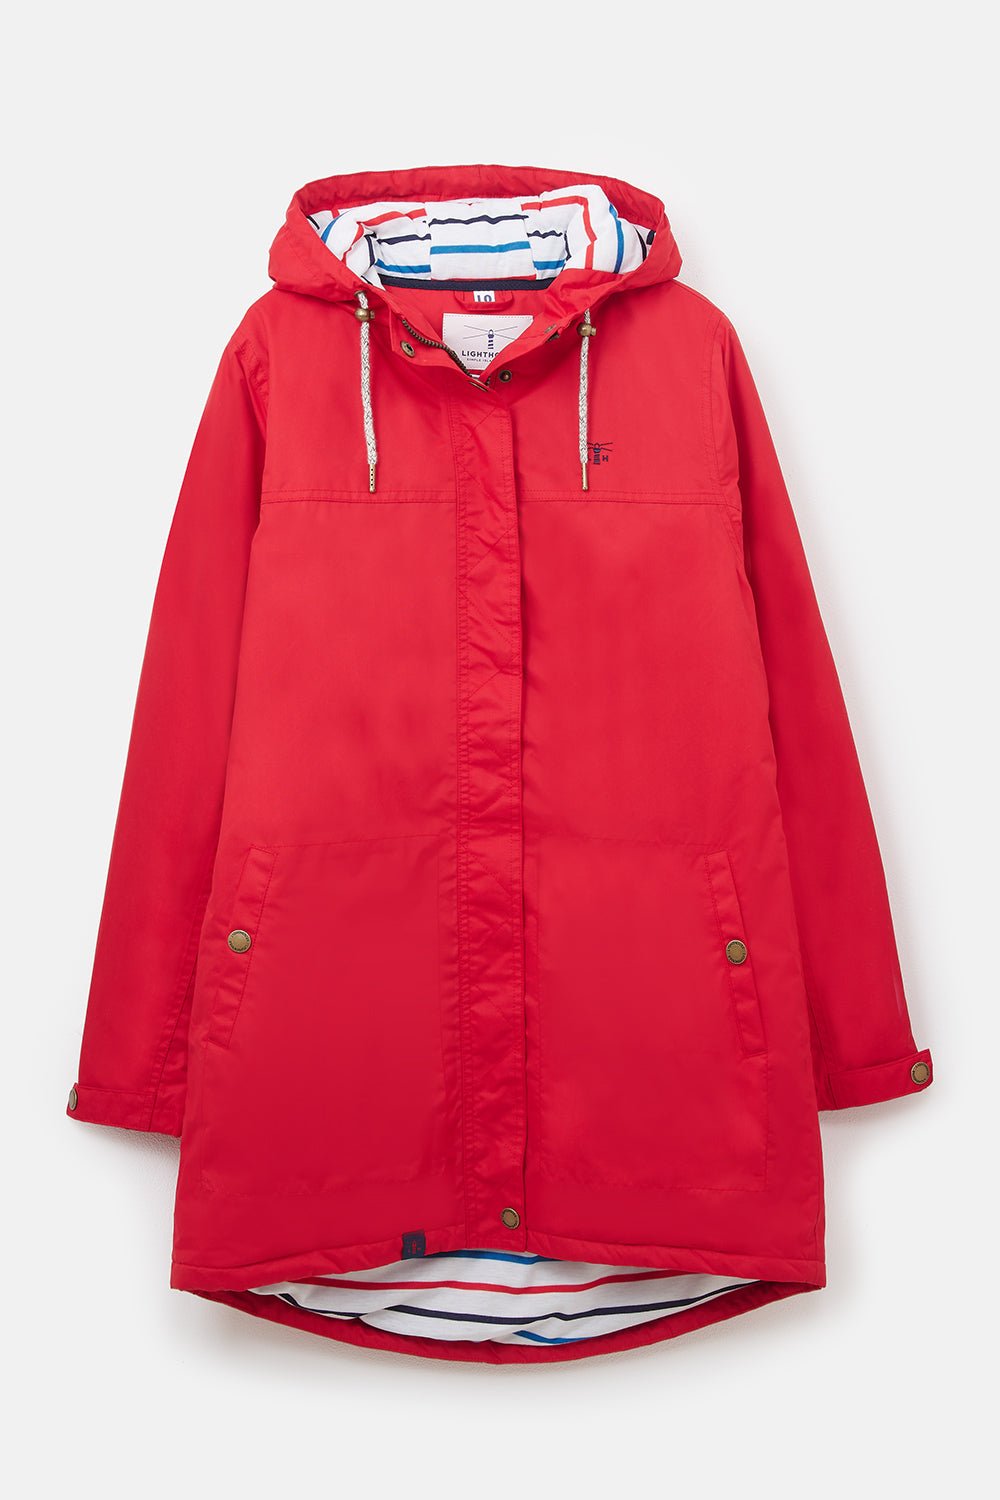 Eva Long Women's Waterproof Coat, Red